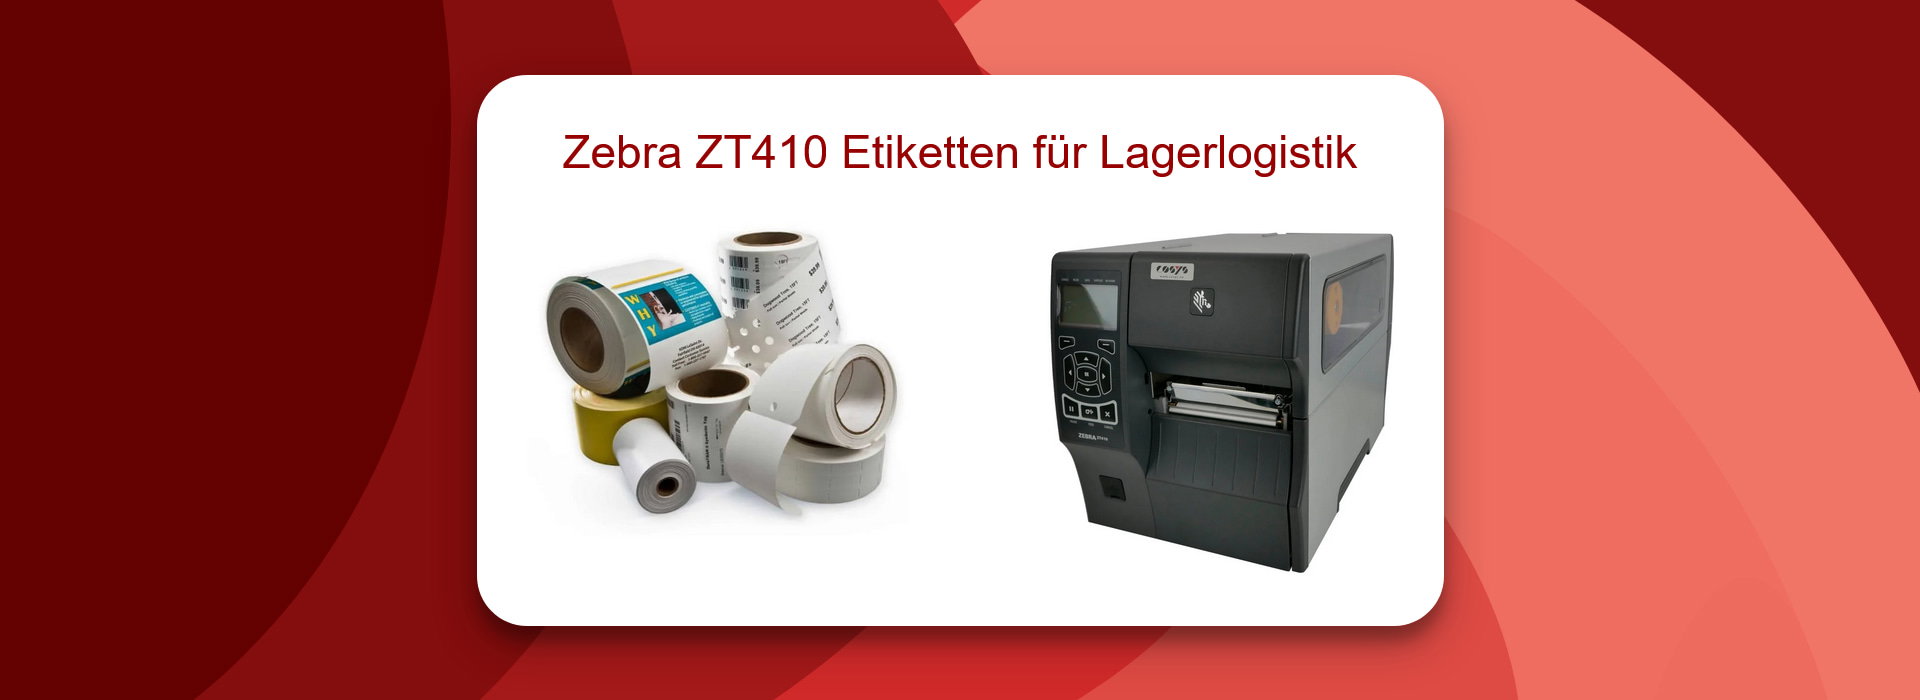 Zebra ZT410 Etiketten für Lagerlogistik